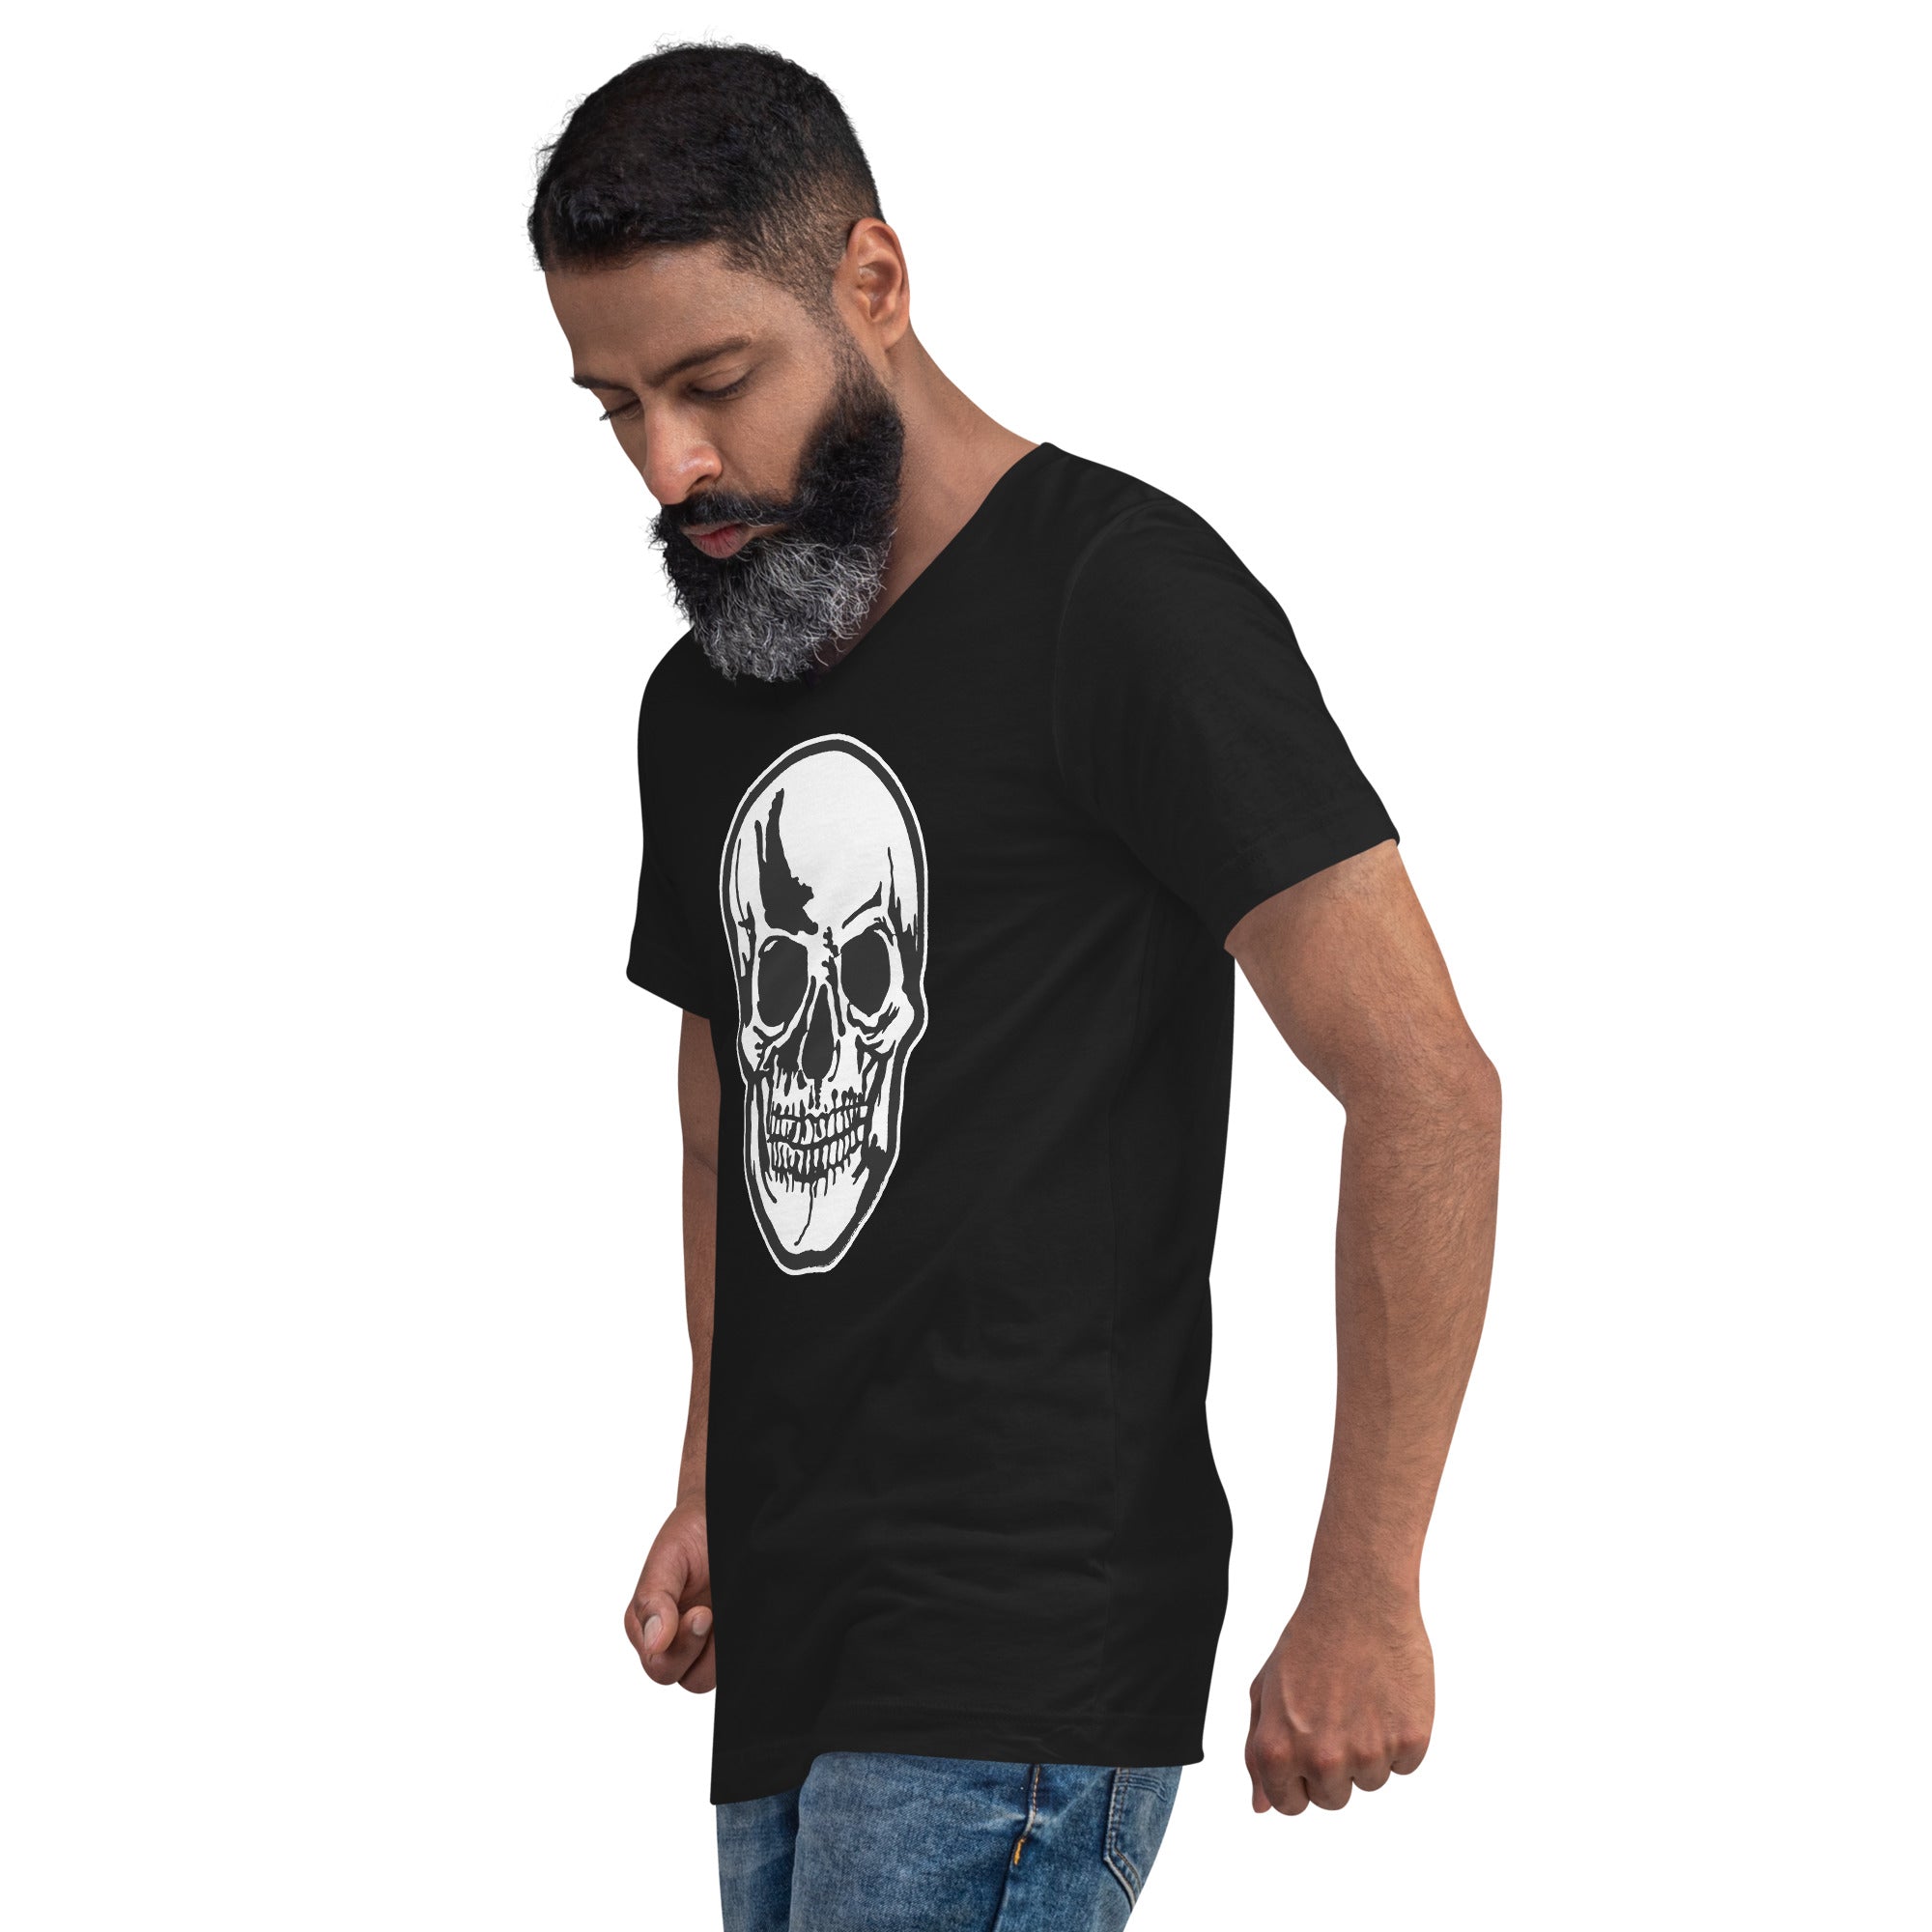 Halloween Oddities Human Skull Short Sleeve V-Neck T-Shirt